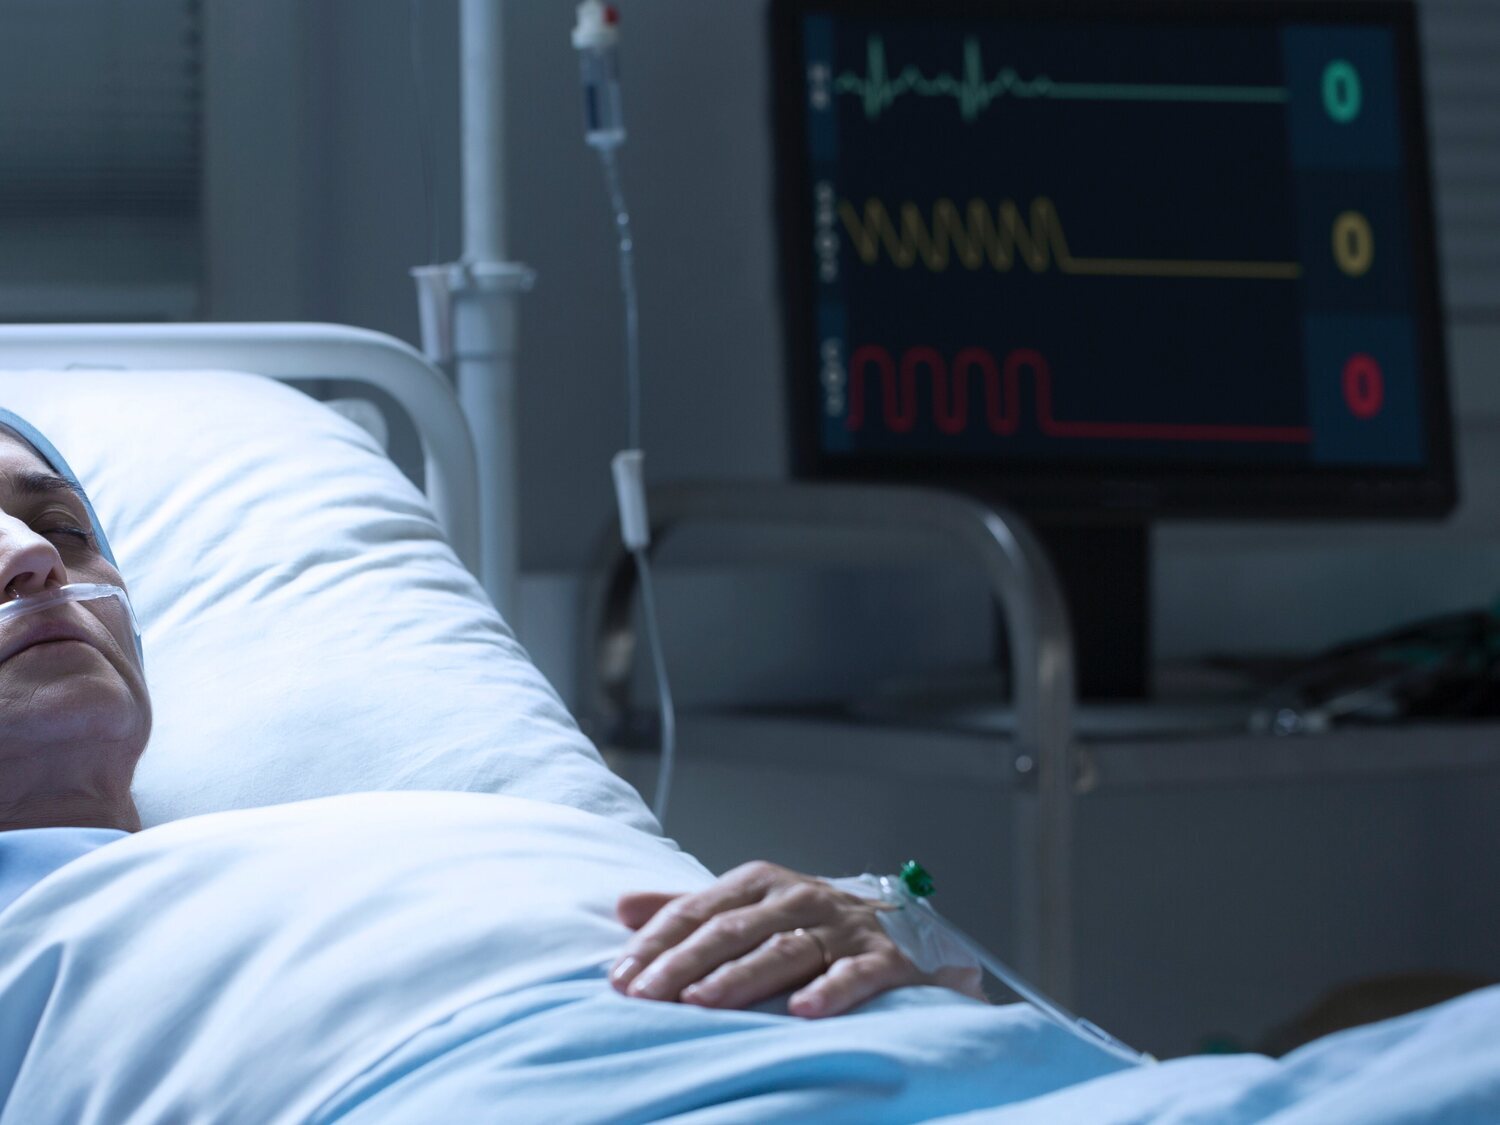 Lo que "ven" y dicen las personas justo antes de morir, según una enfermera de paliativos